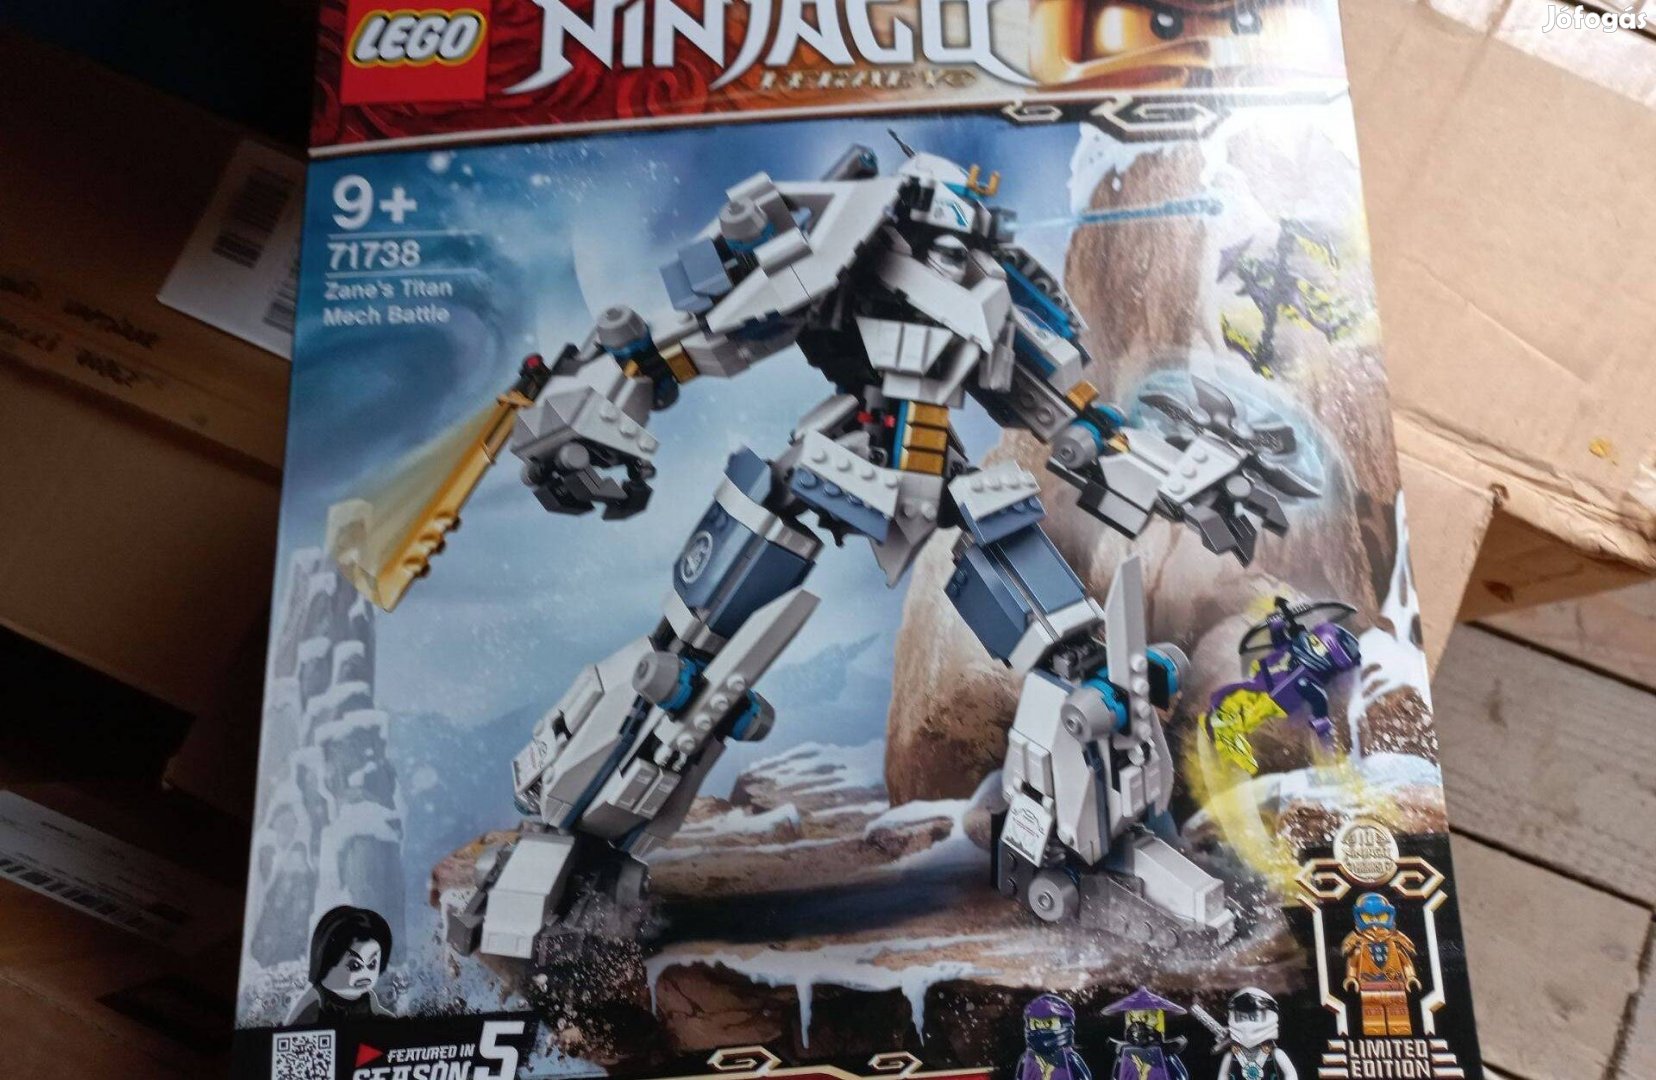 Eladó Lego Ninjago 71738 Zane mechanikus titánjának csatája új